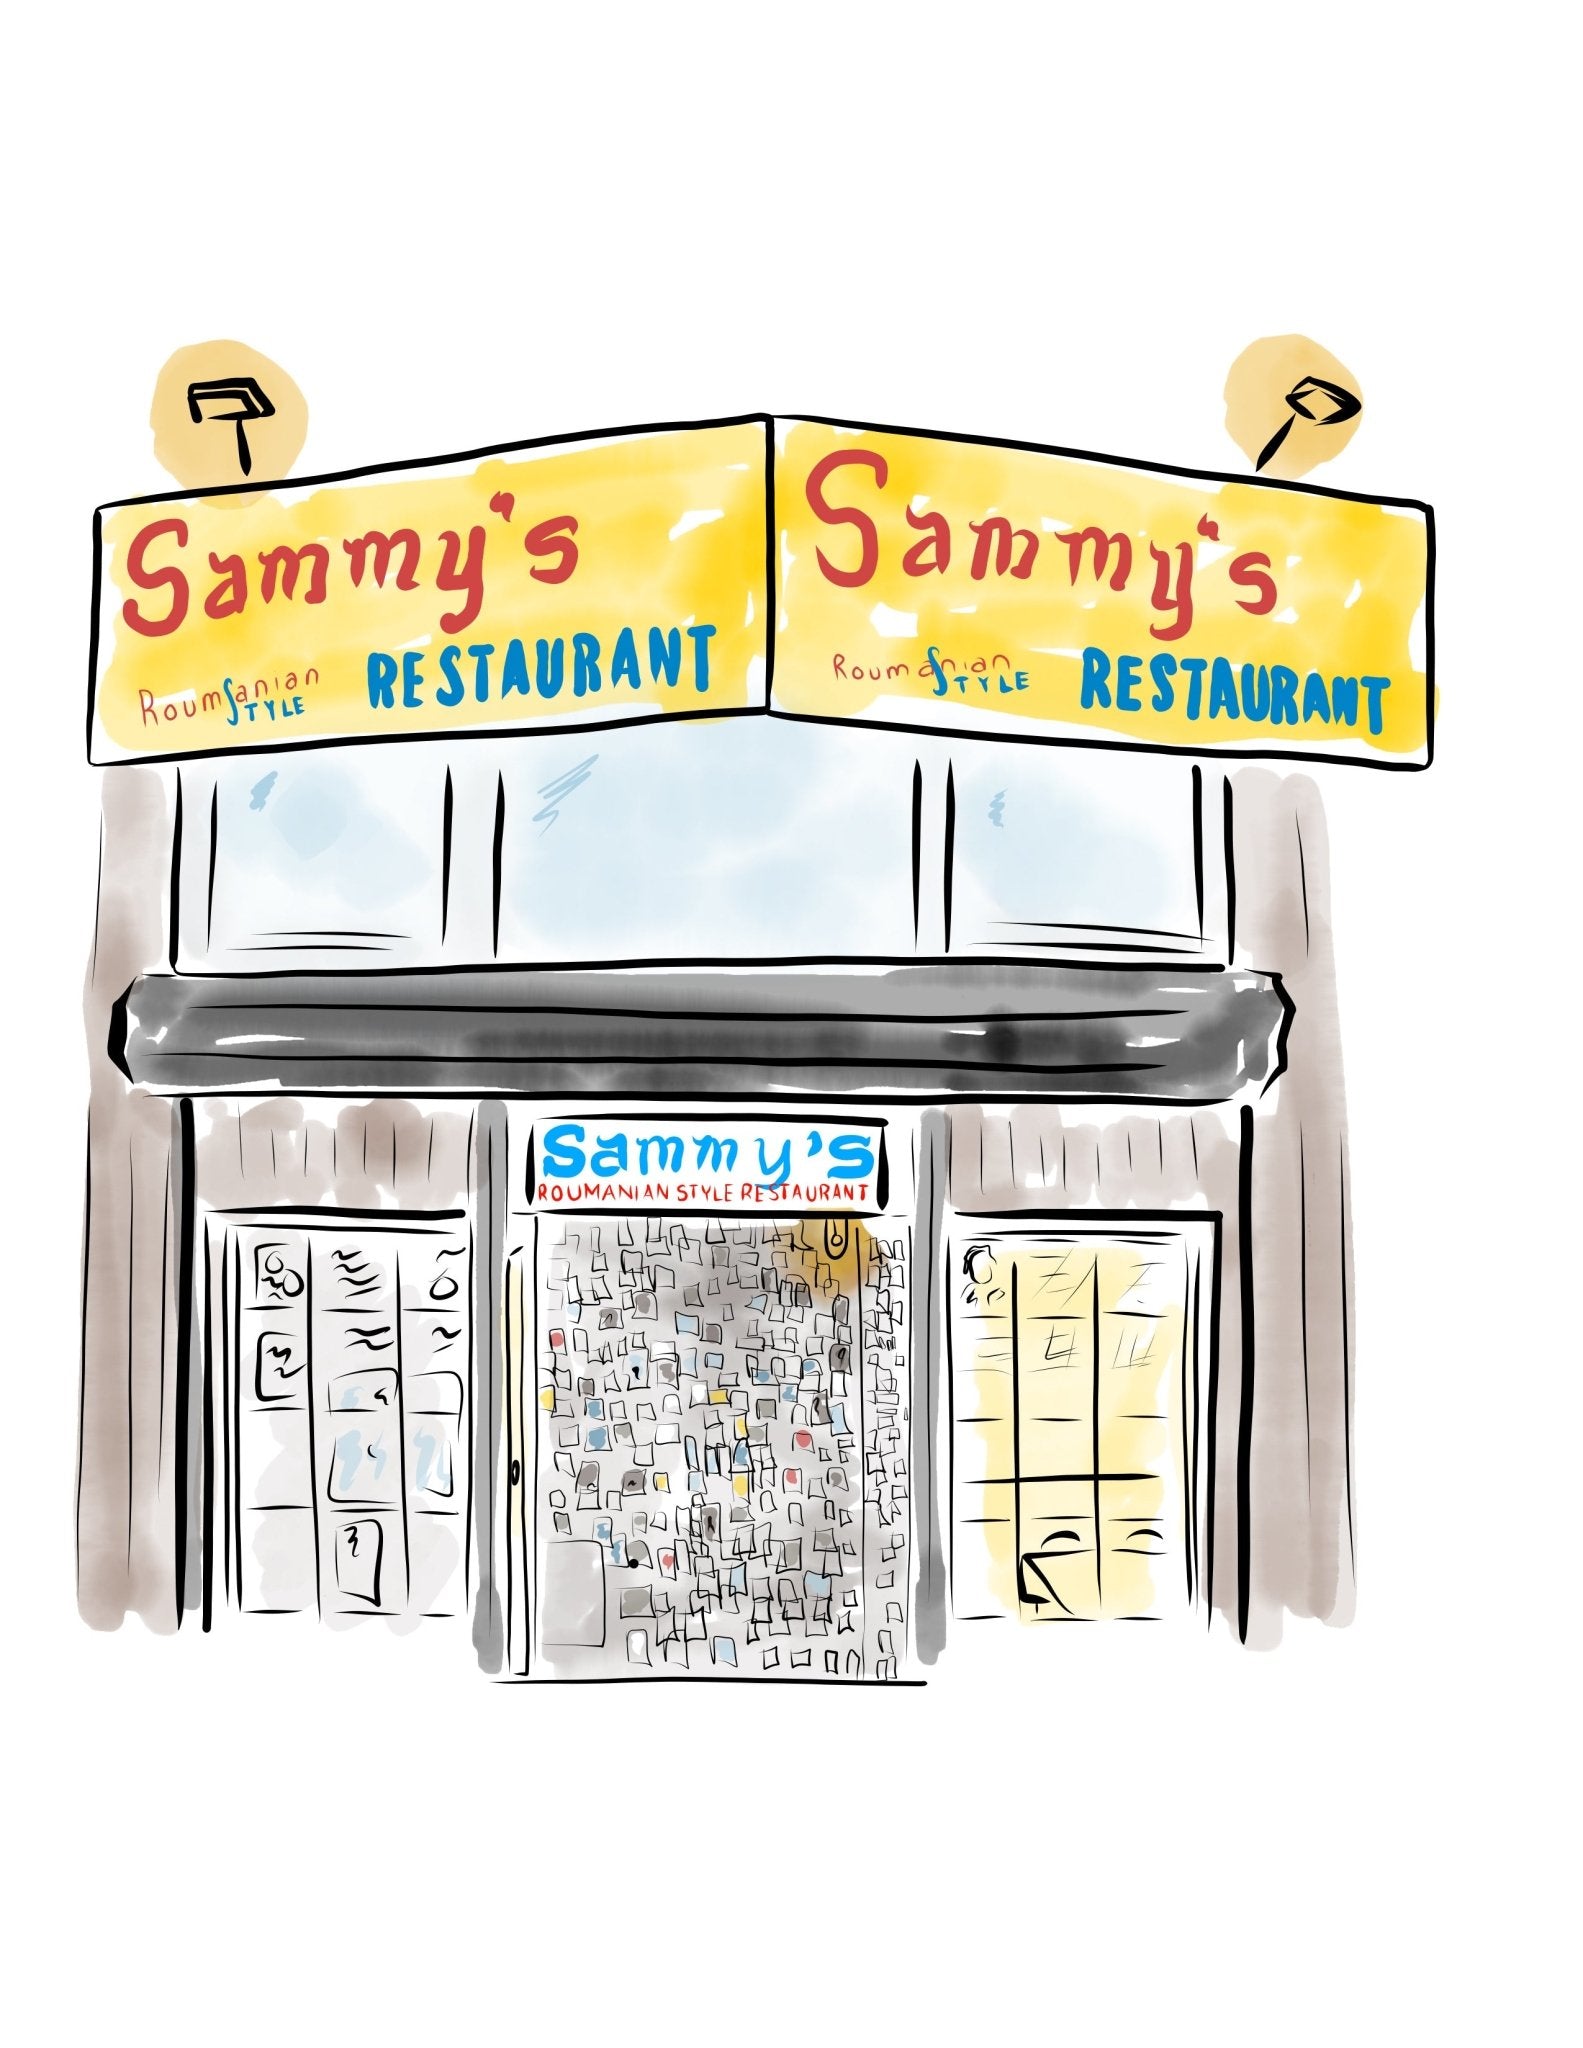 Sammy’s Romanian - JenScribblesNY